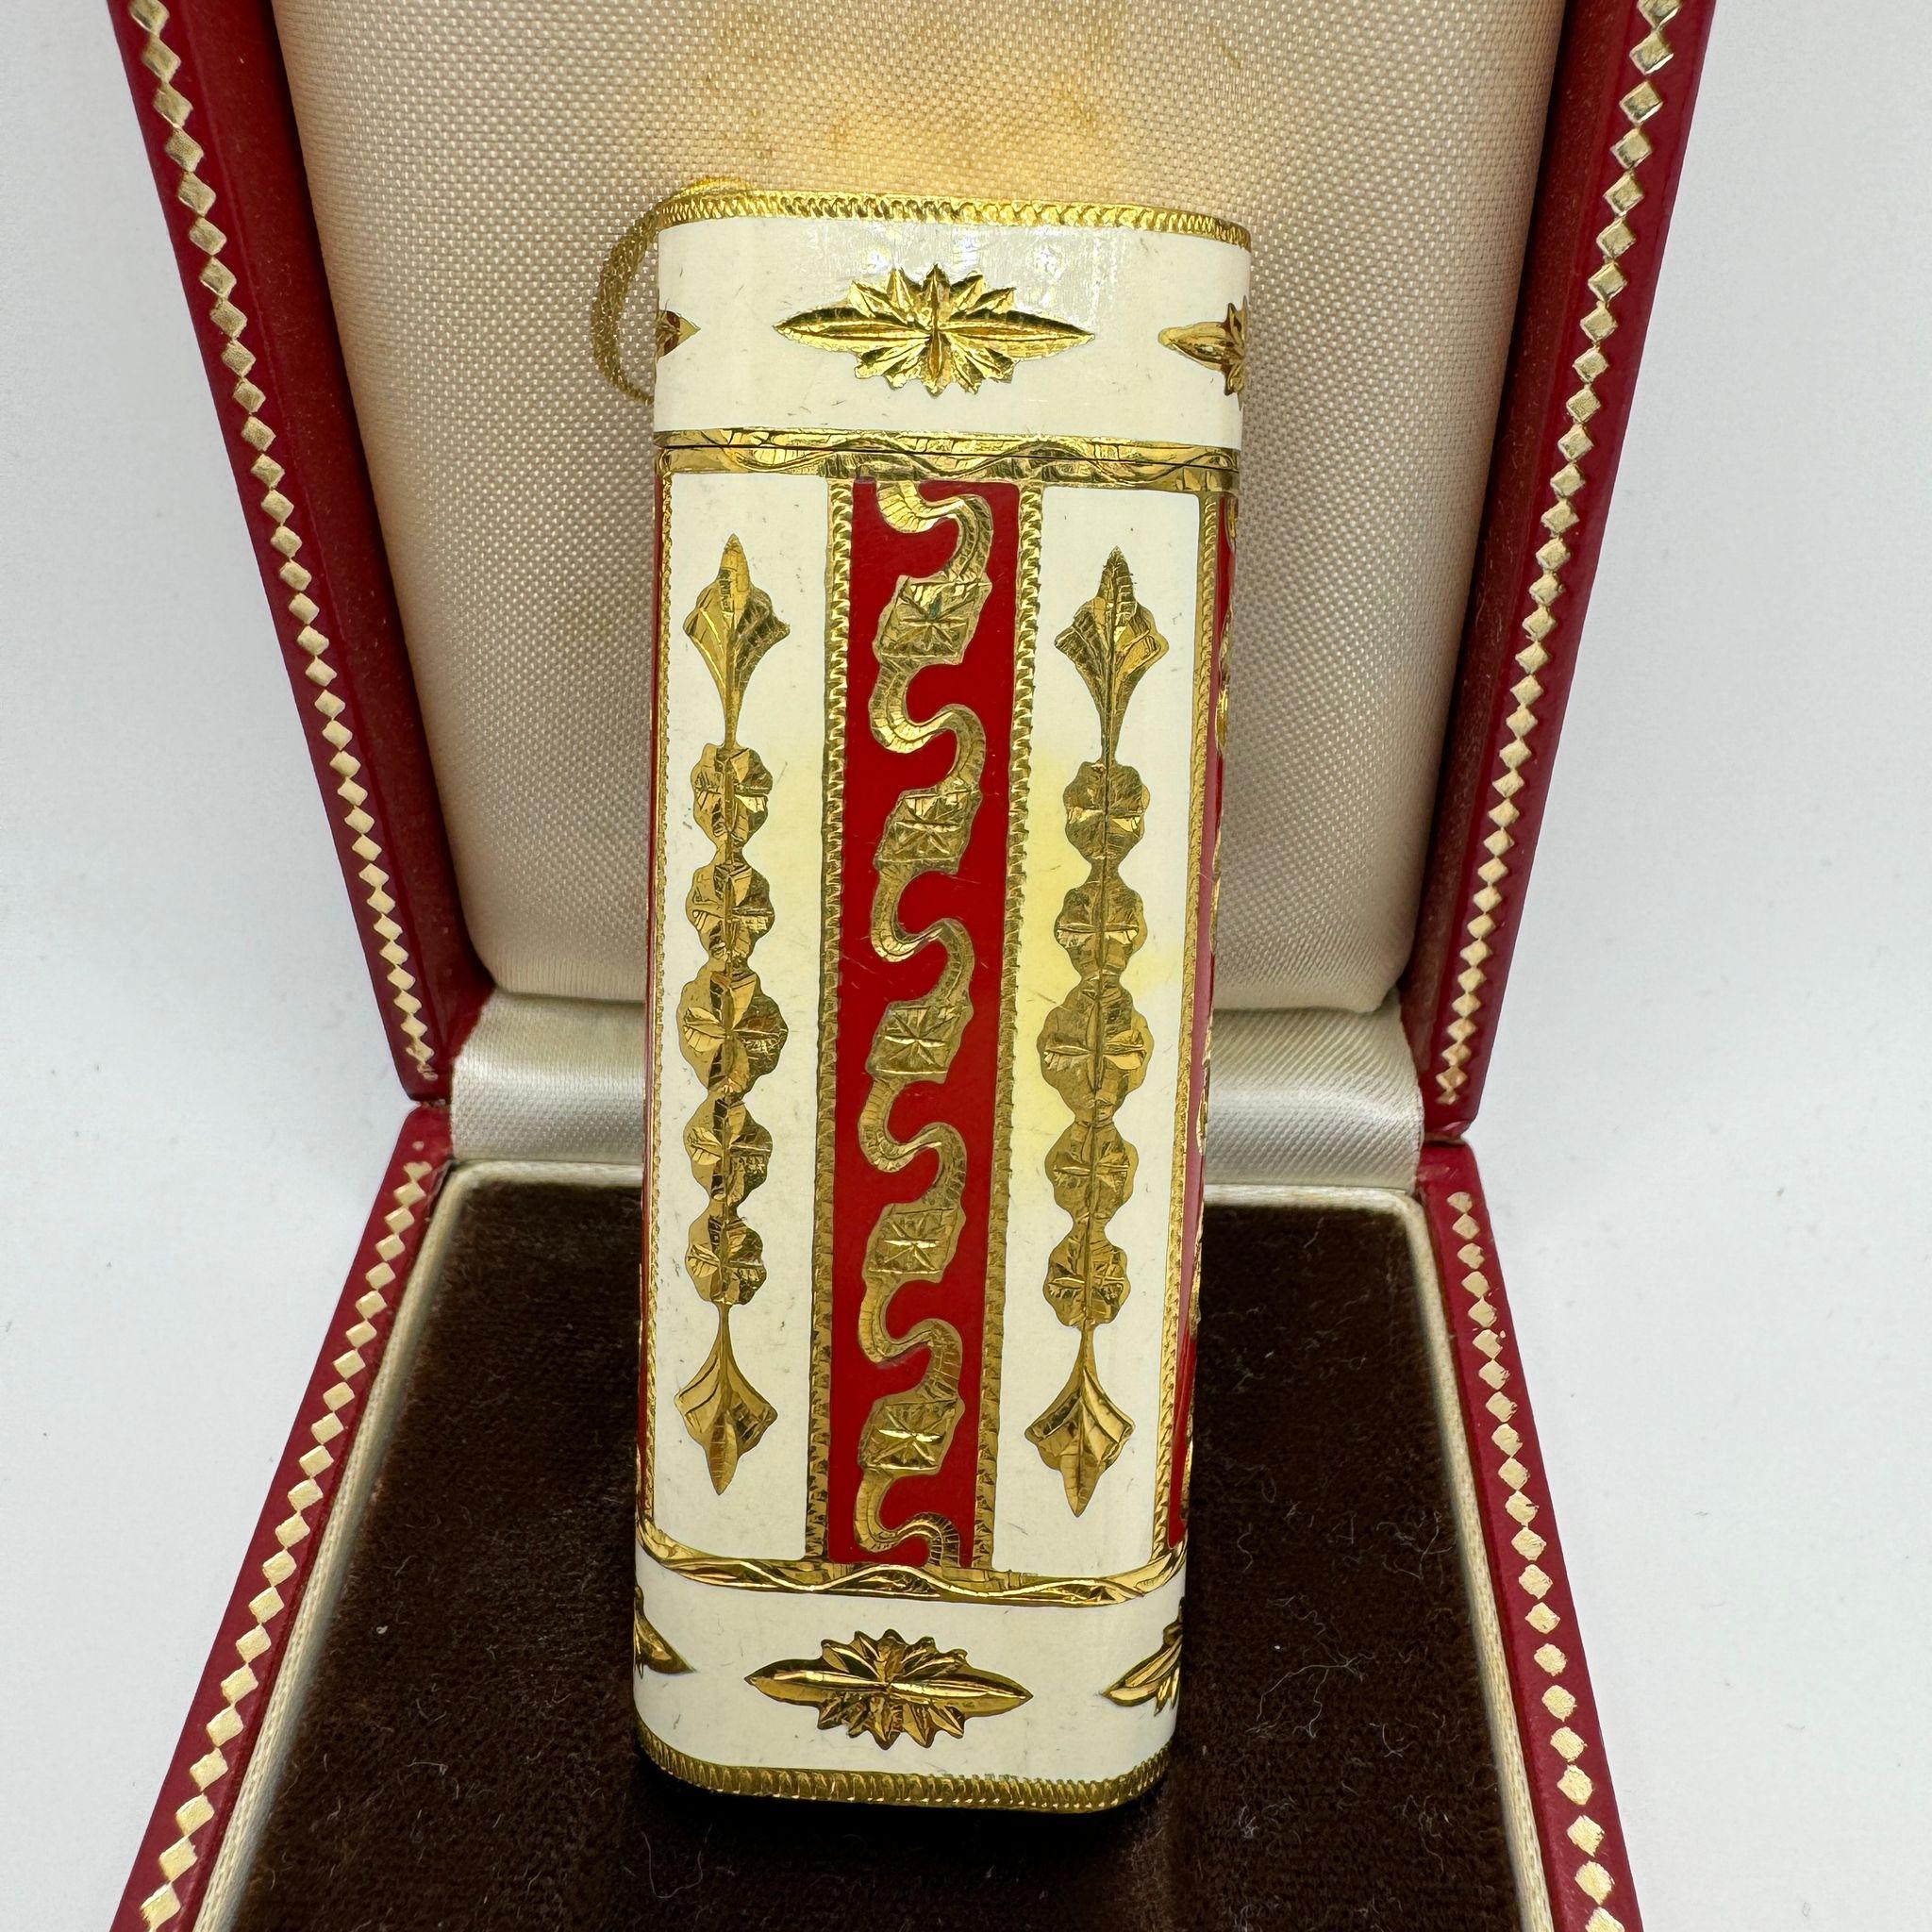 Seltener Royking-Leuchter von Le Must de Cartier, 18 Karat vergoldet und Emaille-Intarsien 
Creme und rote Farbe 
Cartier Feuerzeug 